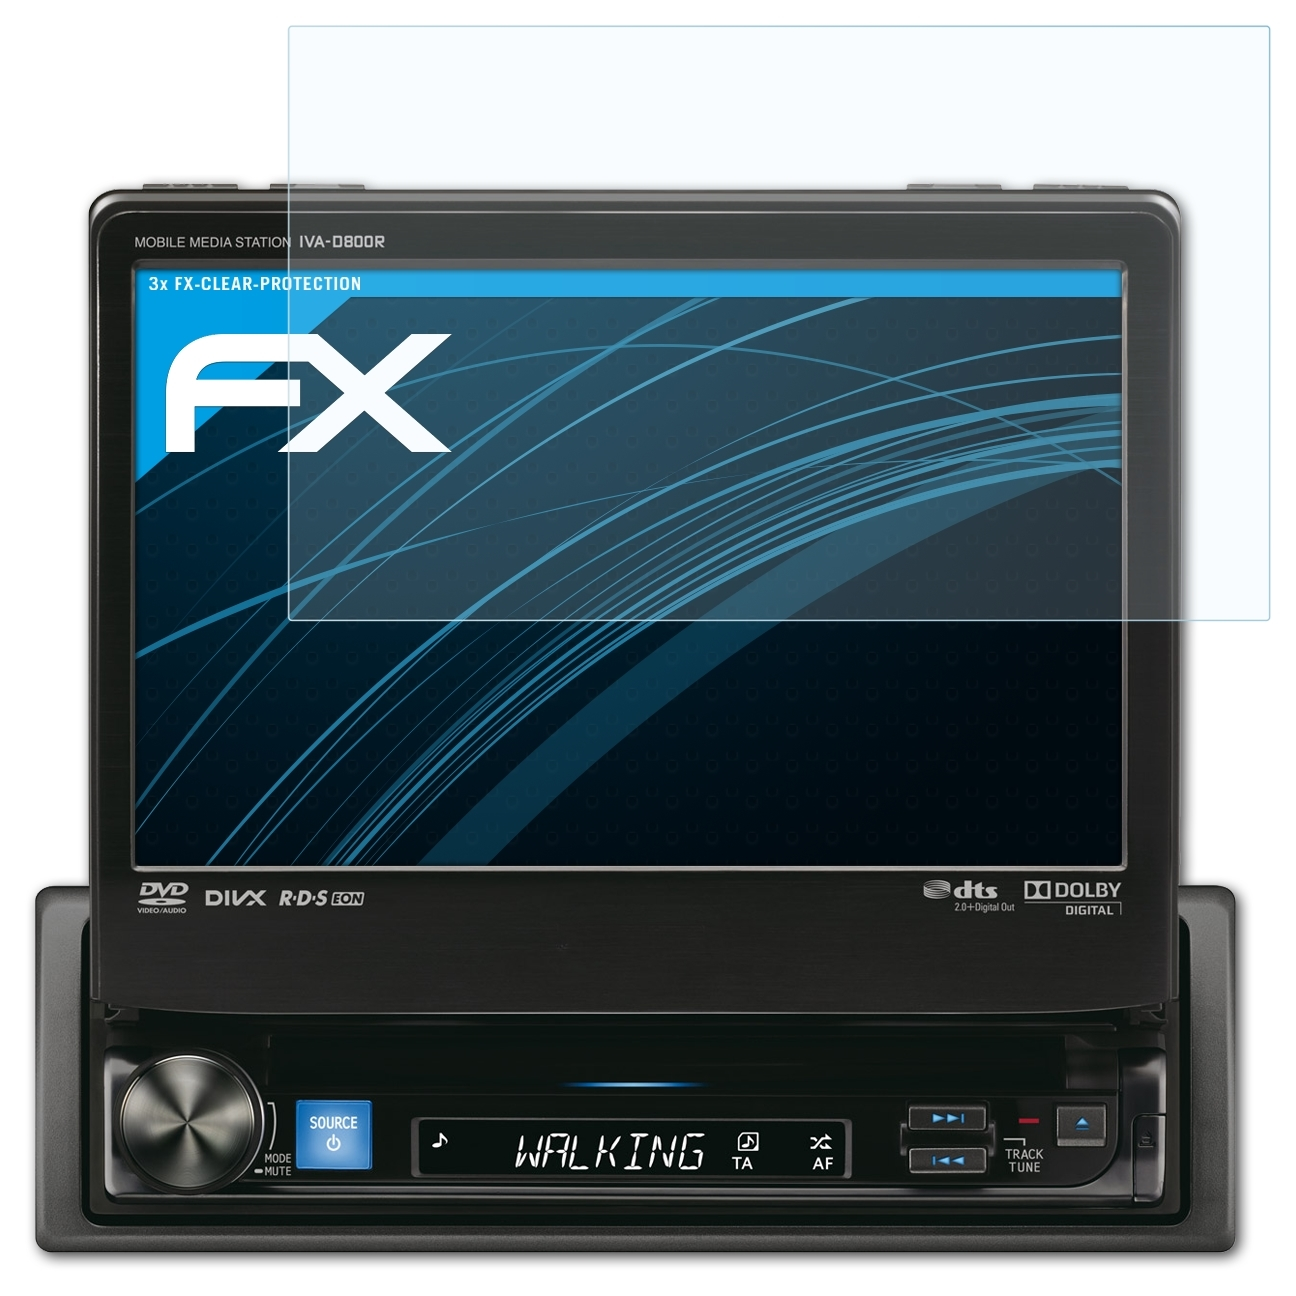 Alpine 3x ATFOLIX IVA-D800R) Displayschutz(für FX-Clear